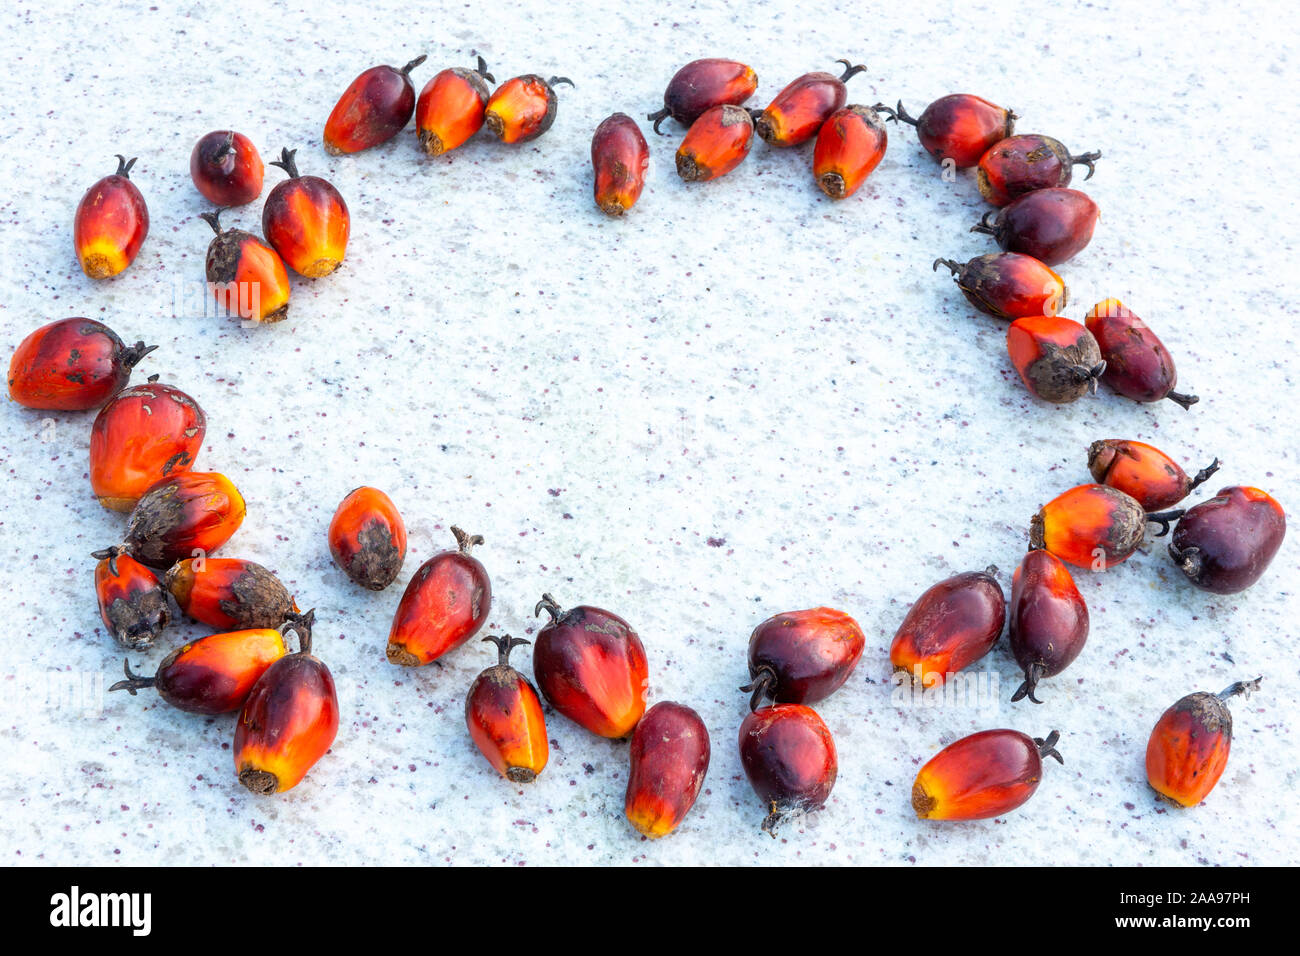 Gros plan du groupe de fruits frais à l'huile de palme (Elaeis guineensis) utilisé pour fabriquer de l'huile végétale sur une table en marbre rustique avec espace de copie. Concept de la nature, ECO. Banque D'Images